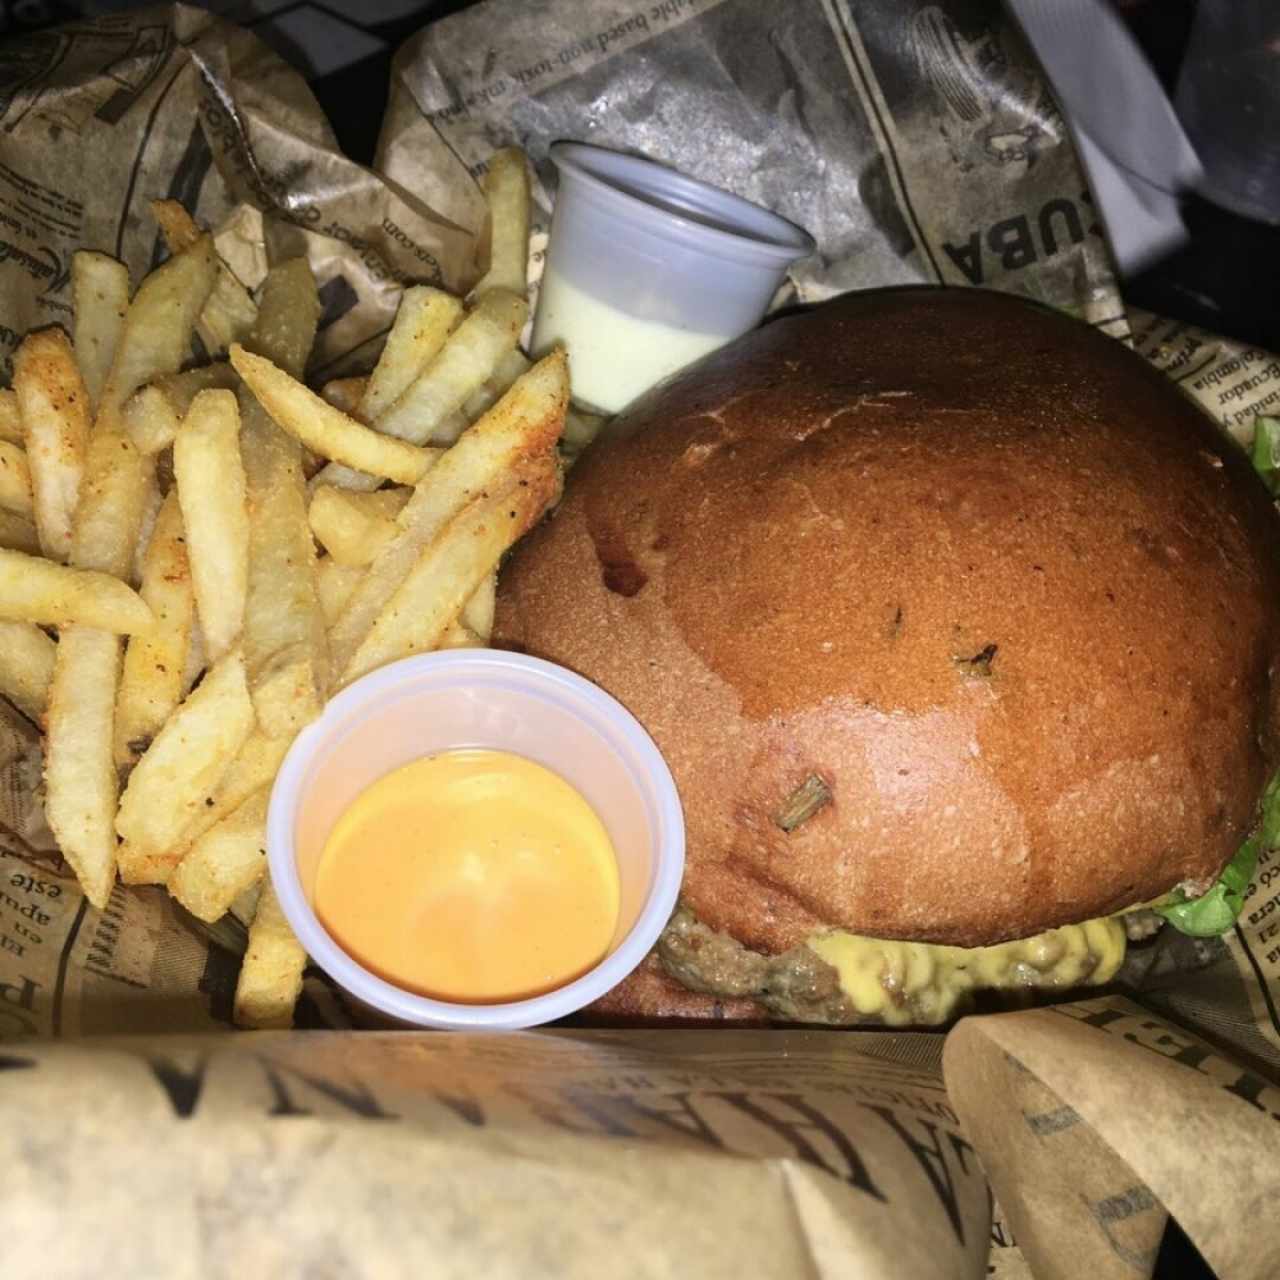 La flaca sexy burger.